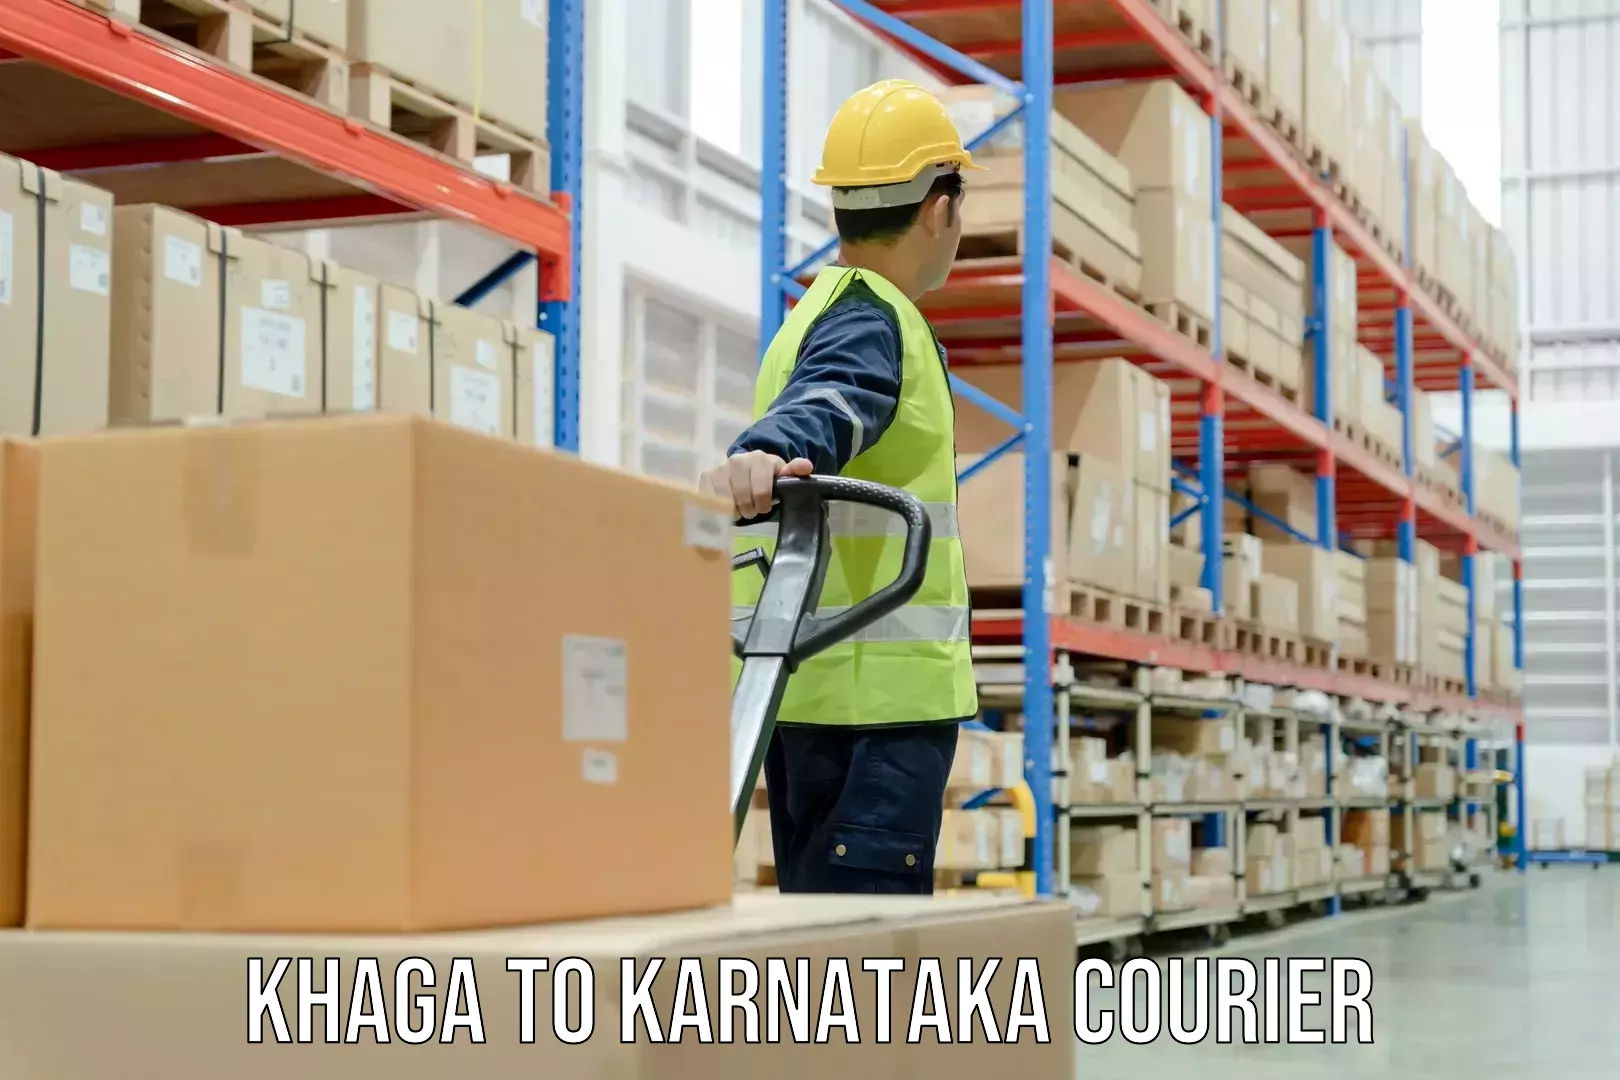 Advanced package delivery in Khaga to Karnataka